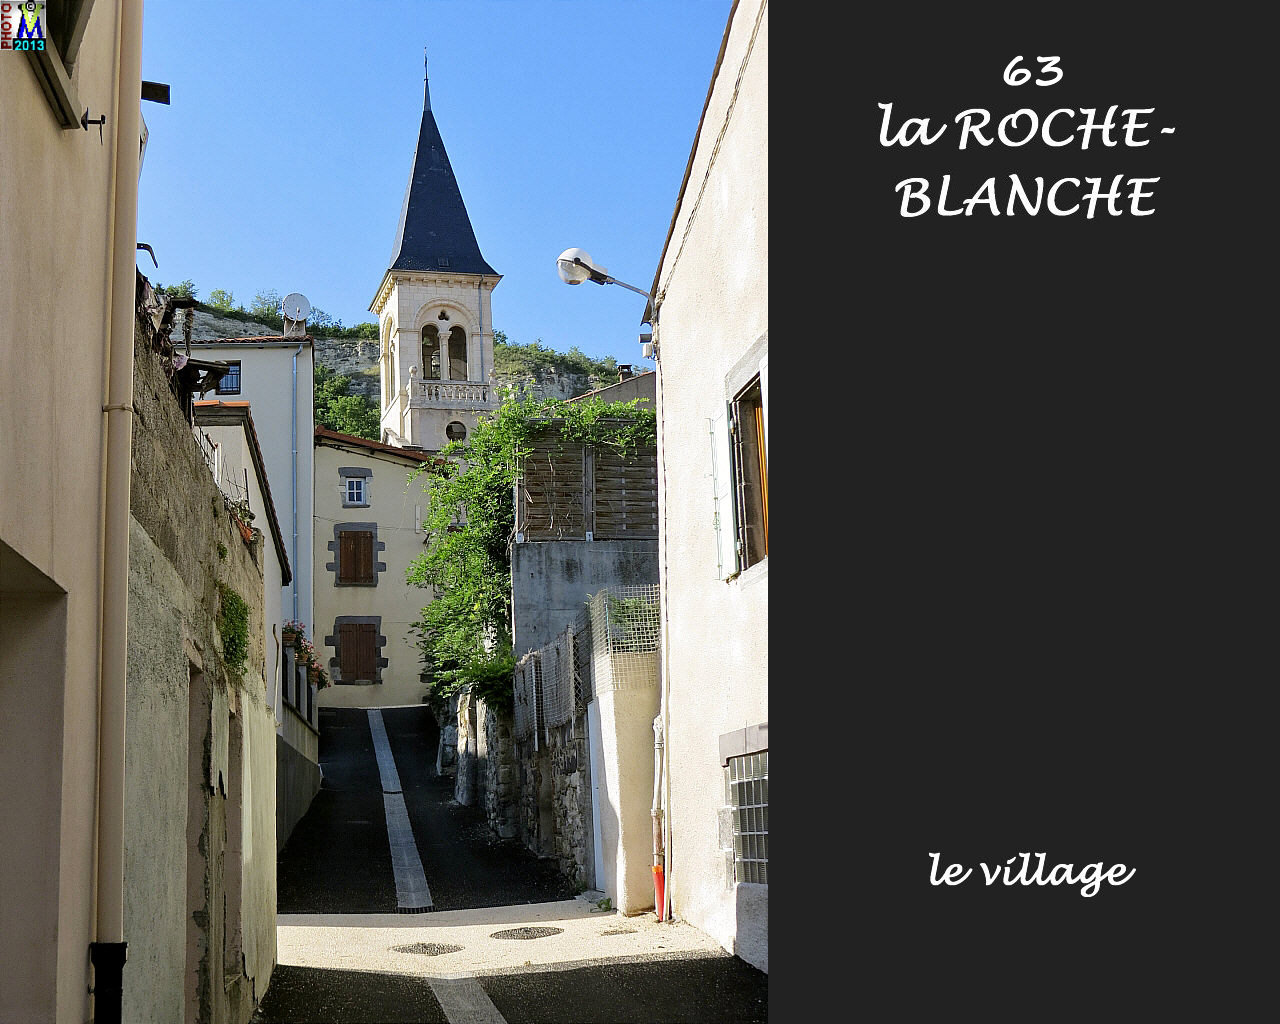 63ROCHE-BLANCHE_village_100.jpg